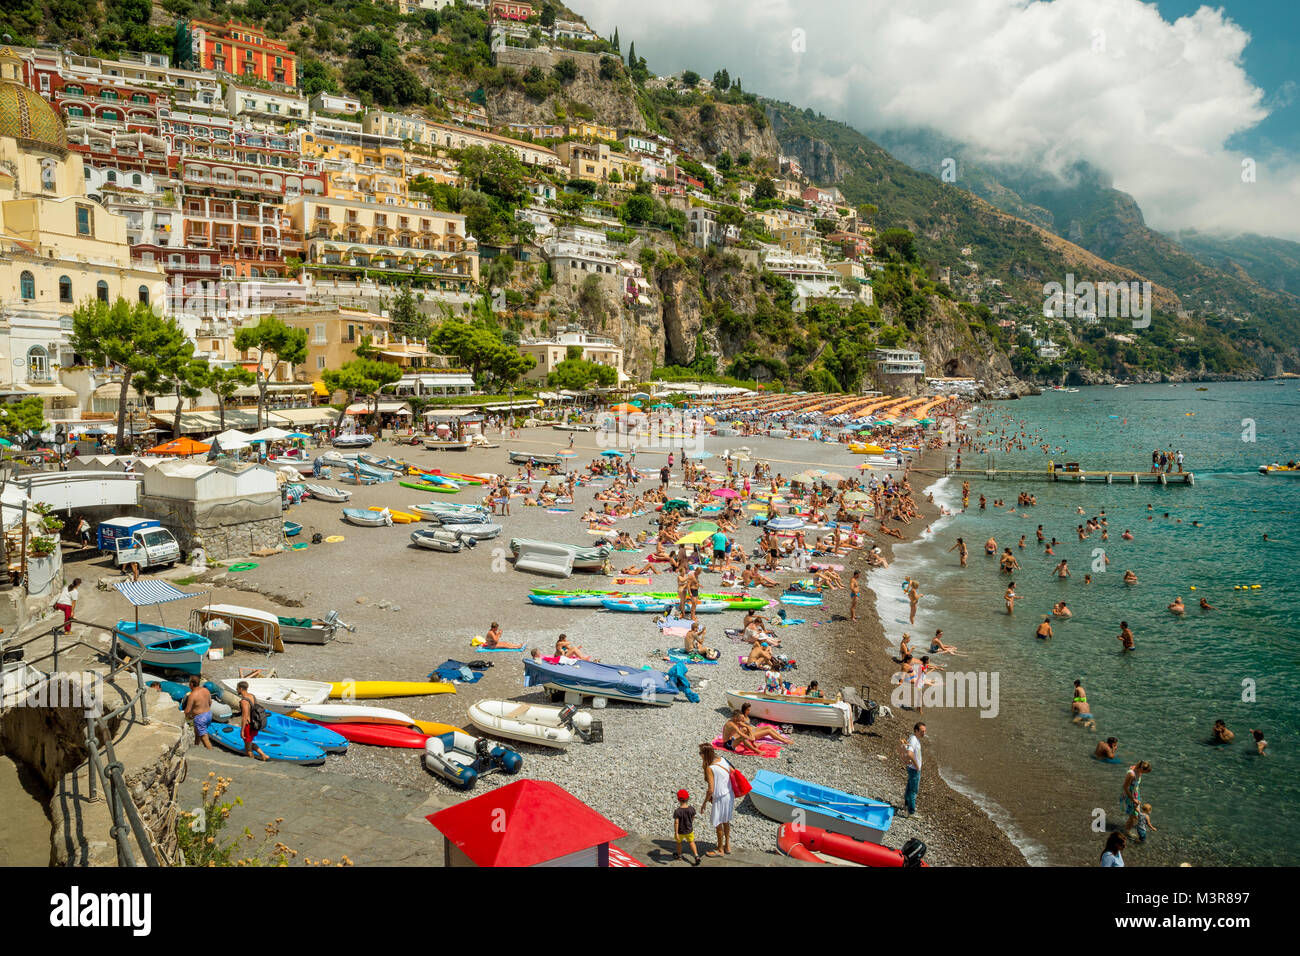 Positano, Italia - 10 agosto 2016: turisti rilassante sulla spiaggia di Positano città. Positano è un antico borgo situato sulla costa di Amalfi in Italia. Foto Stock